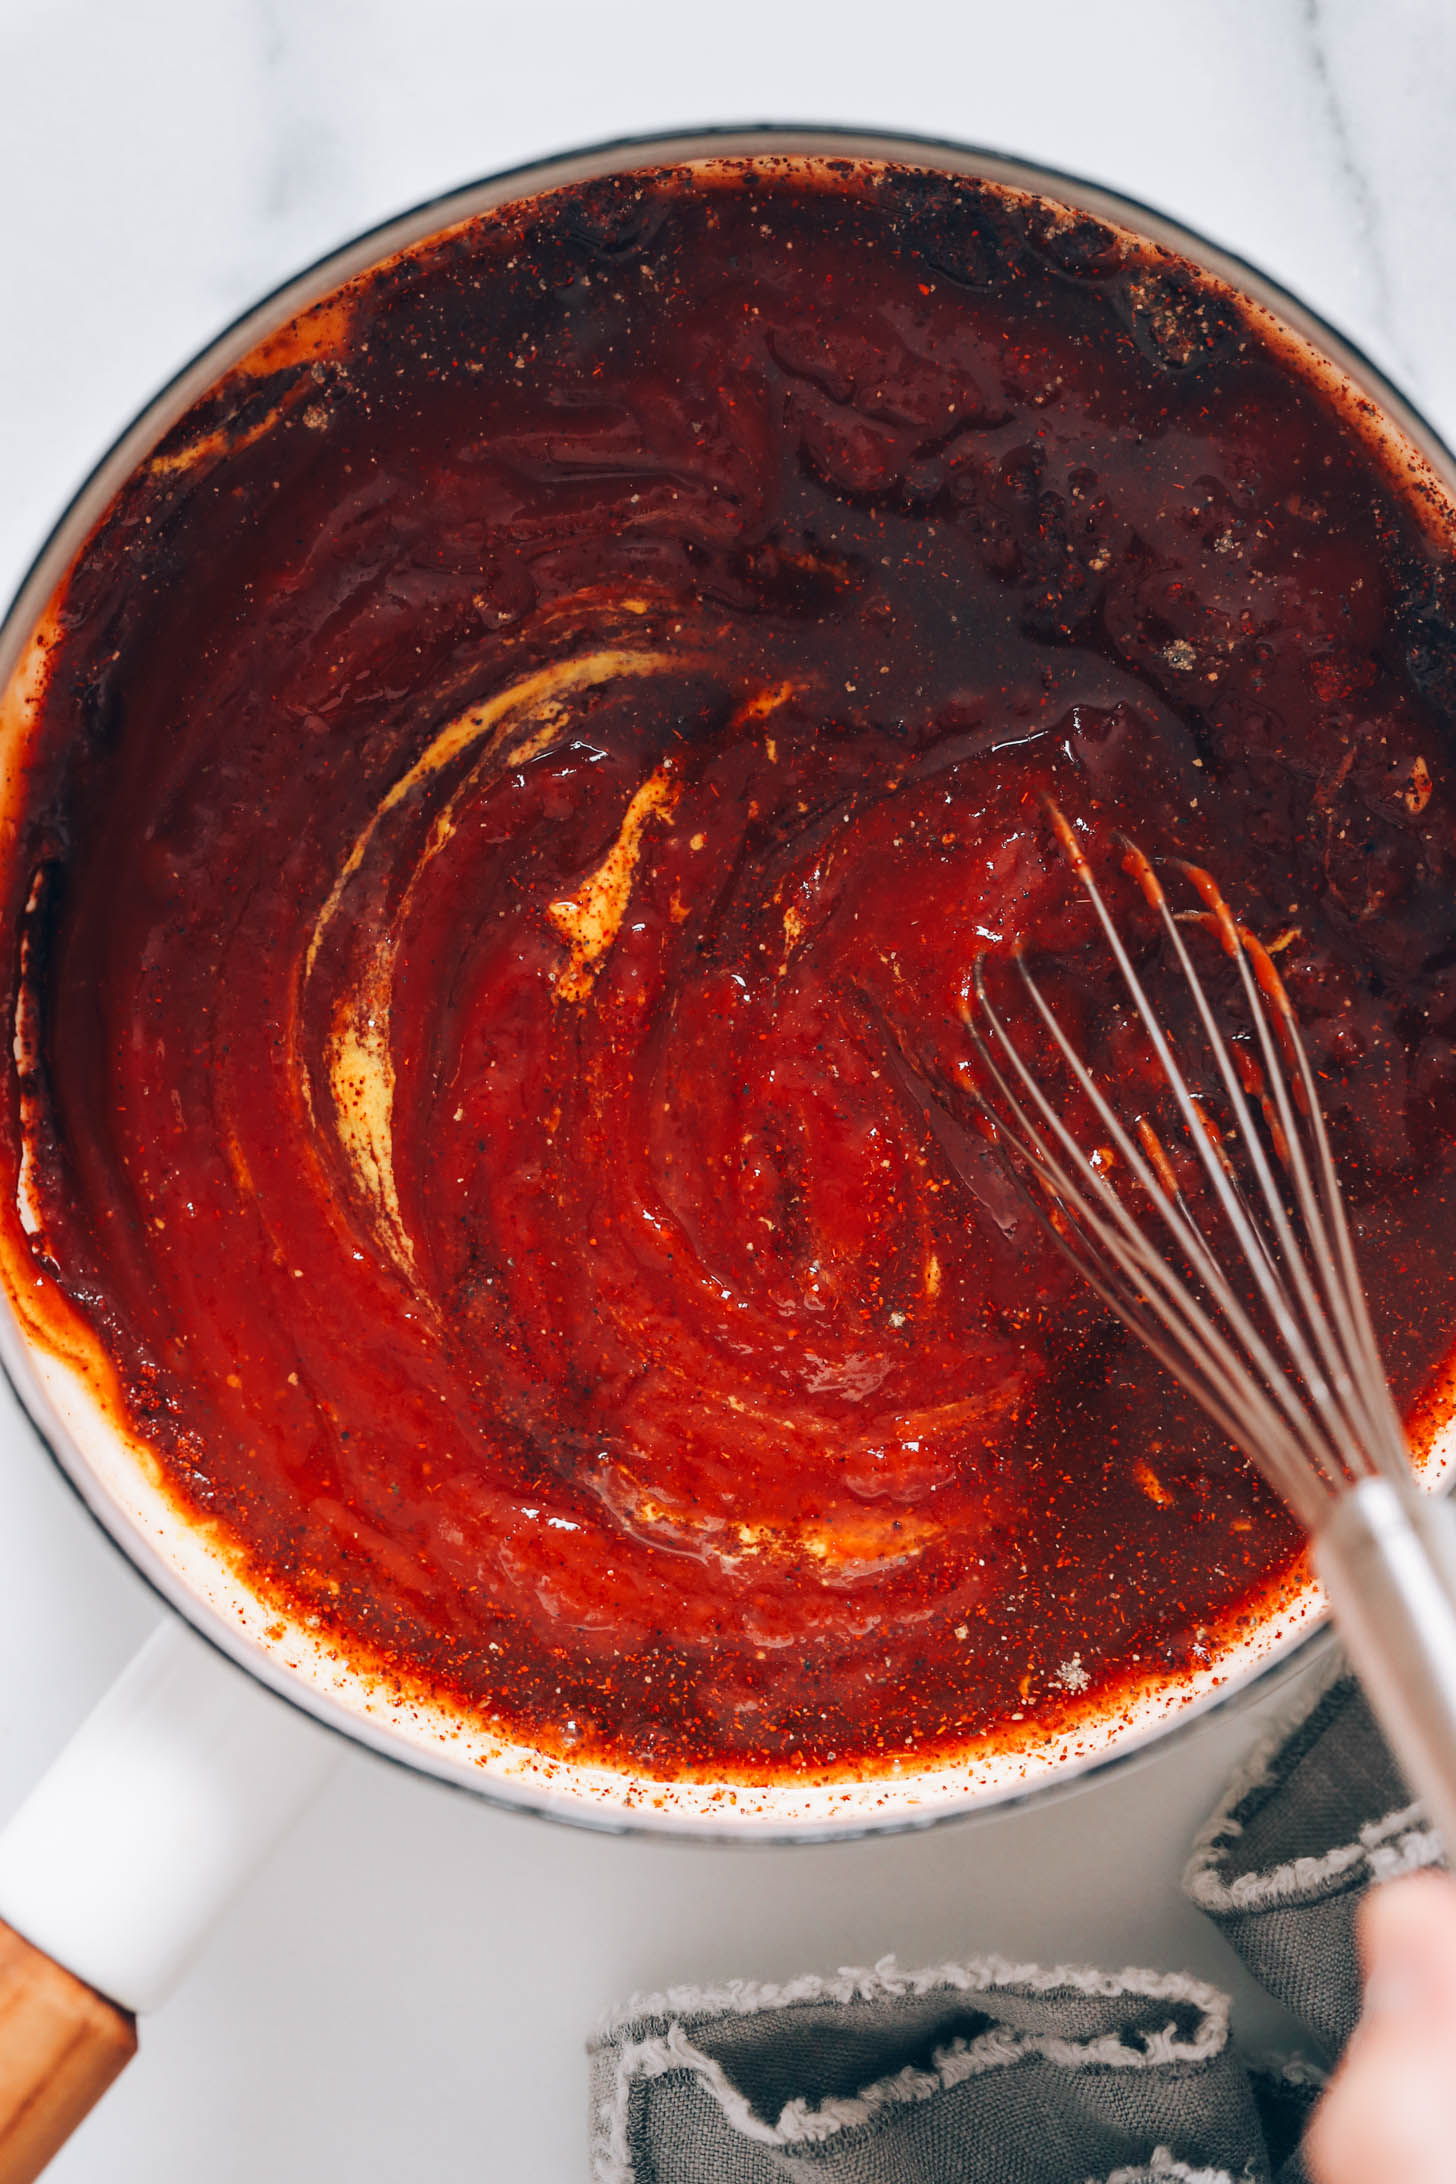 Utiliser un fouet pour mélanger le ketchup, la moutarde, les épices et les autres ingrédients